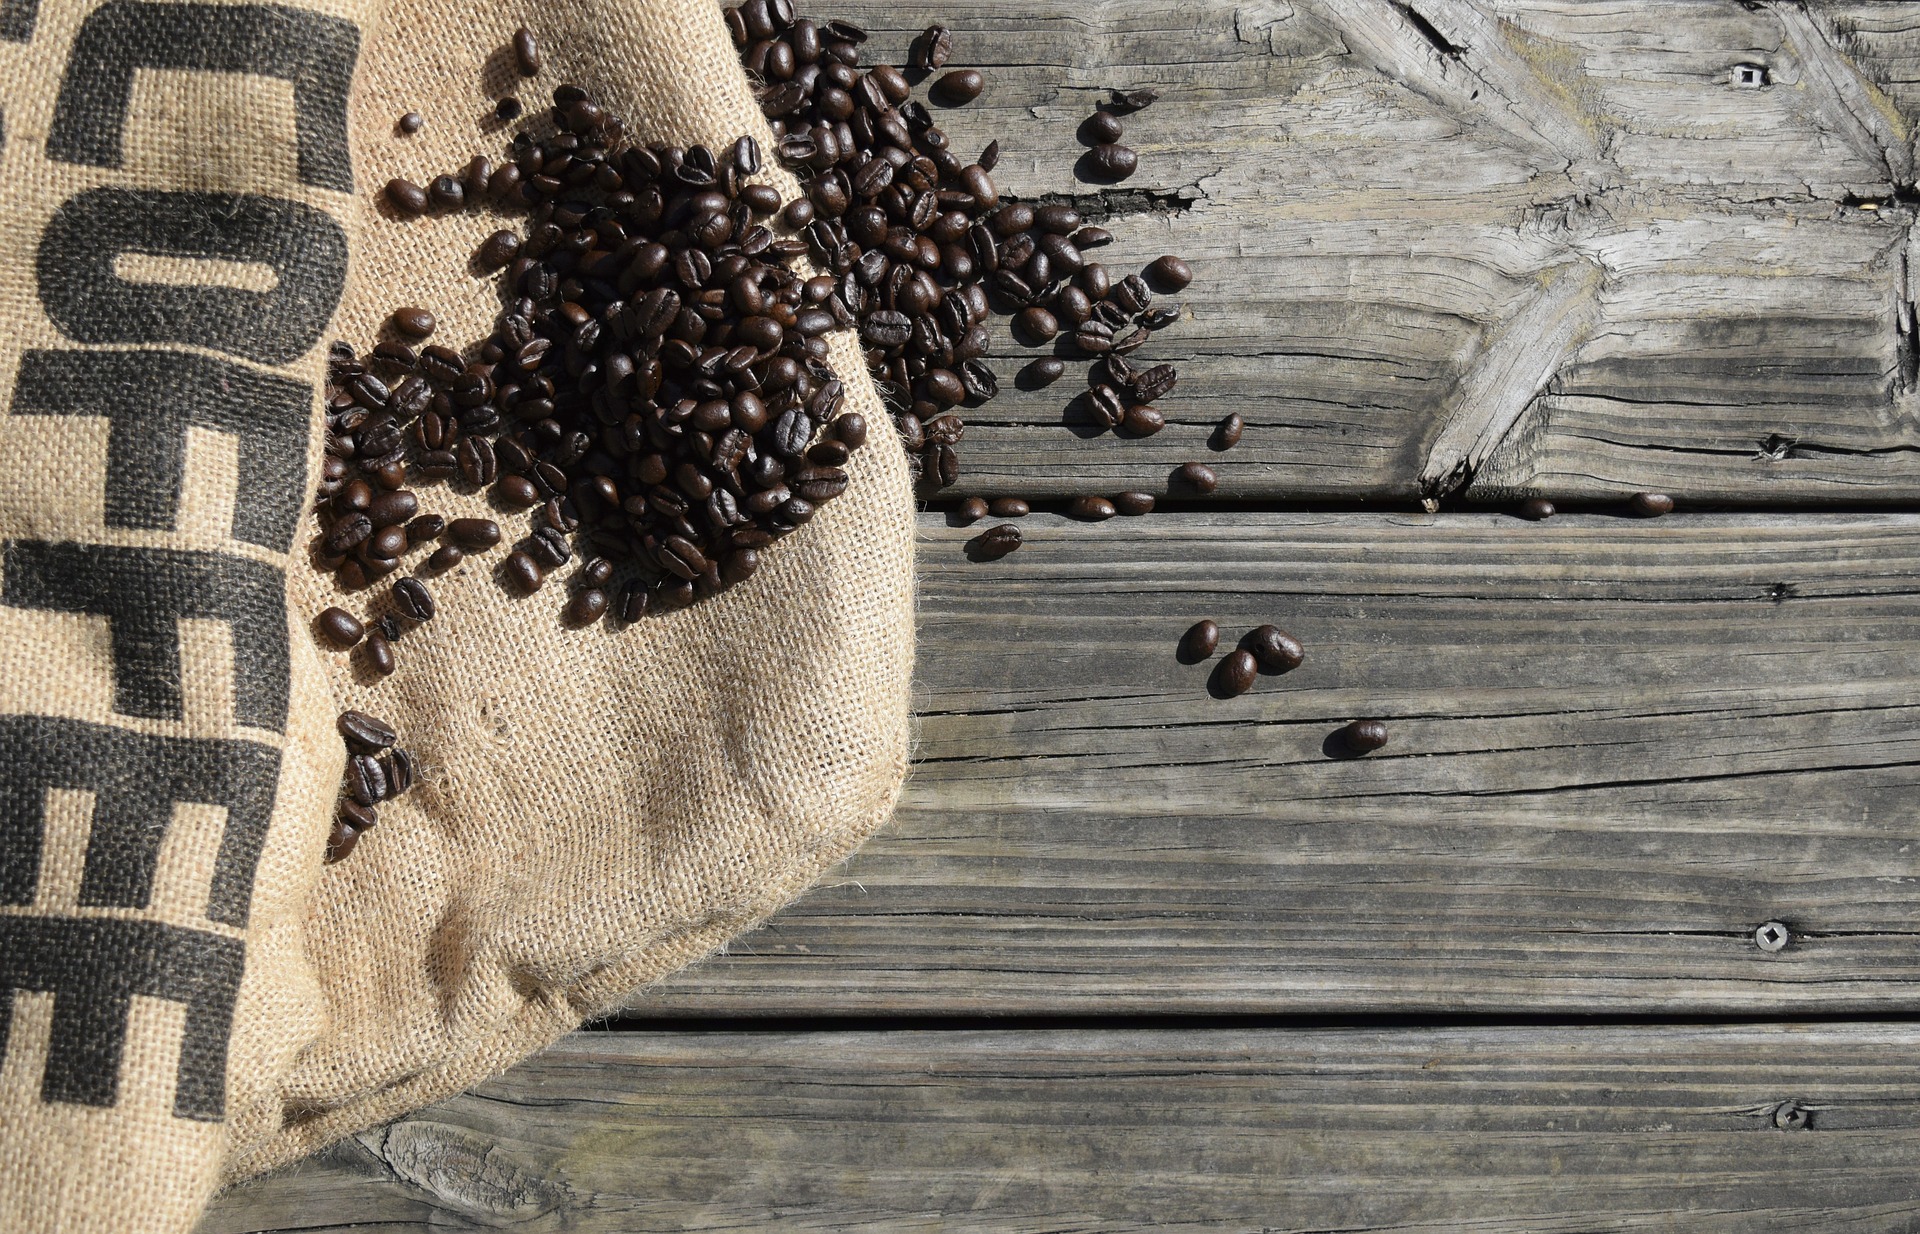 Metode pengolahan pengaruhi keamanan kopi untuk kesehatan